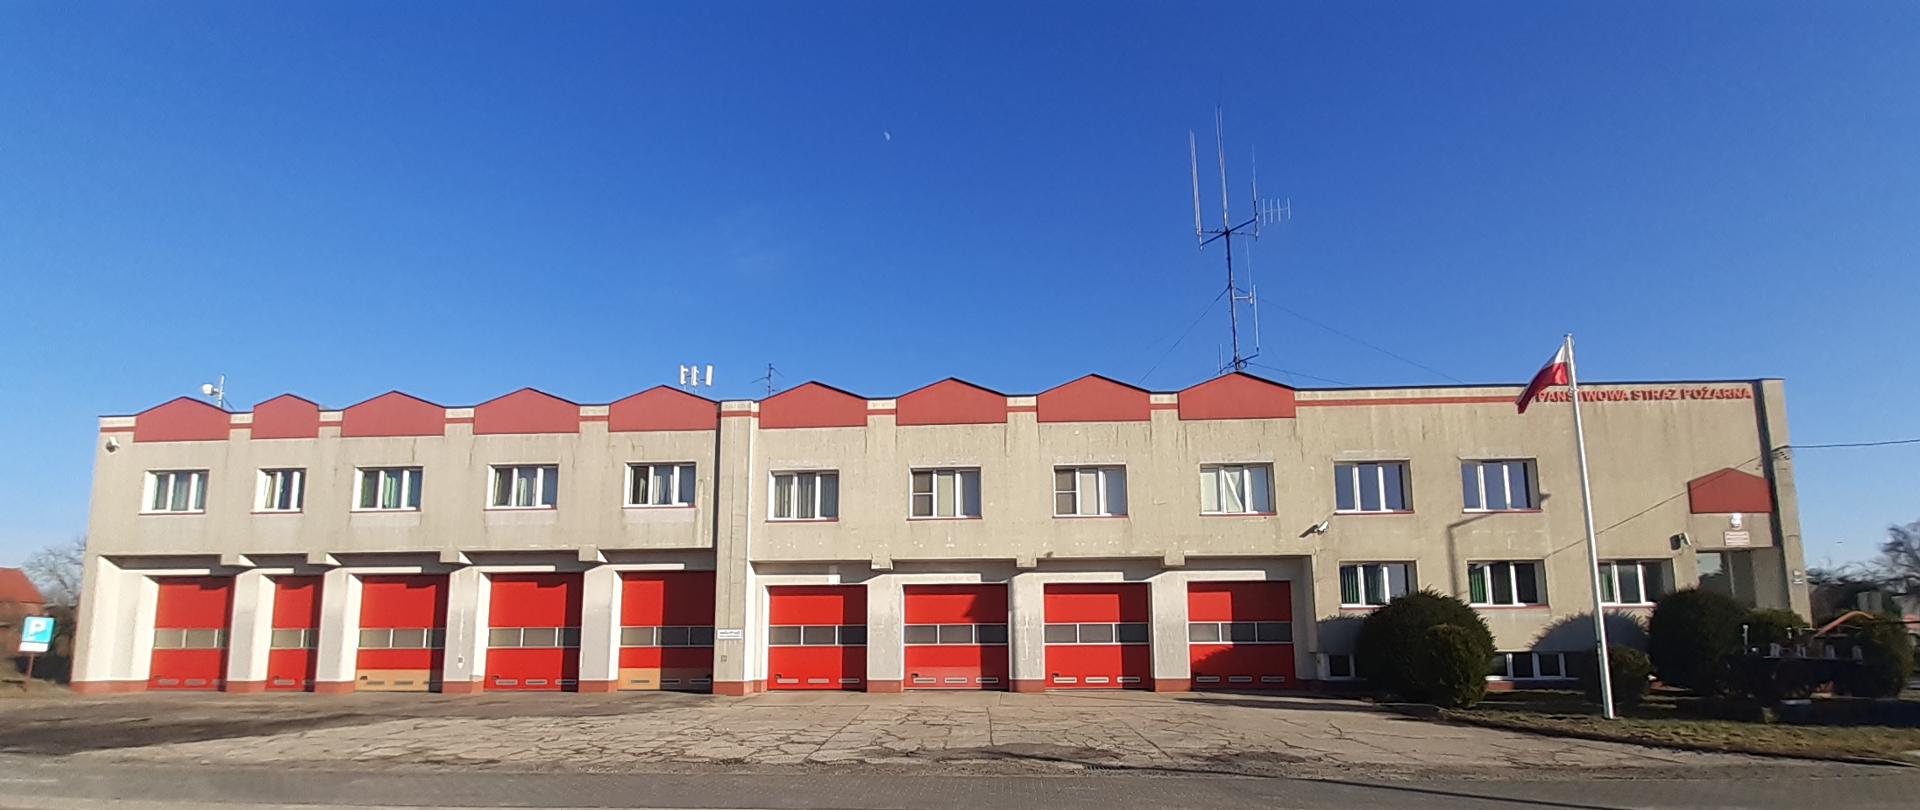 Na zdjęciu widoczna jest fasada budynku KP PSP Krosno Odrzańskie wraz z przyległą JRG Krosno Odrzańskie.